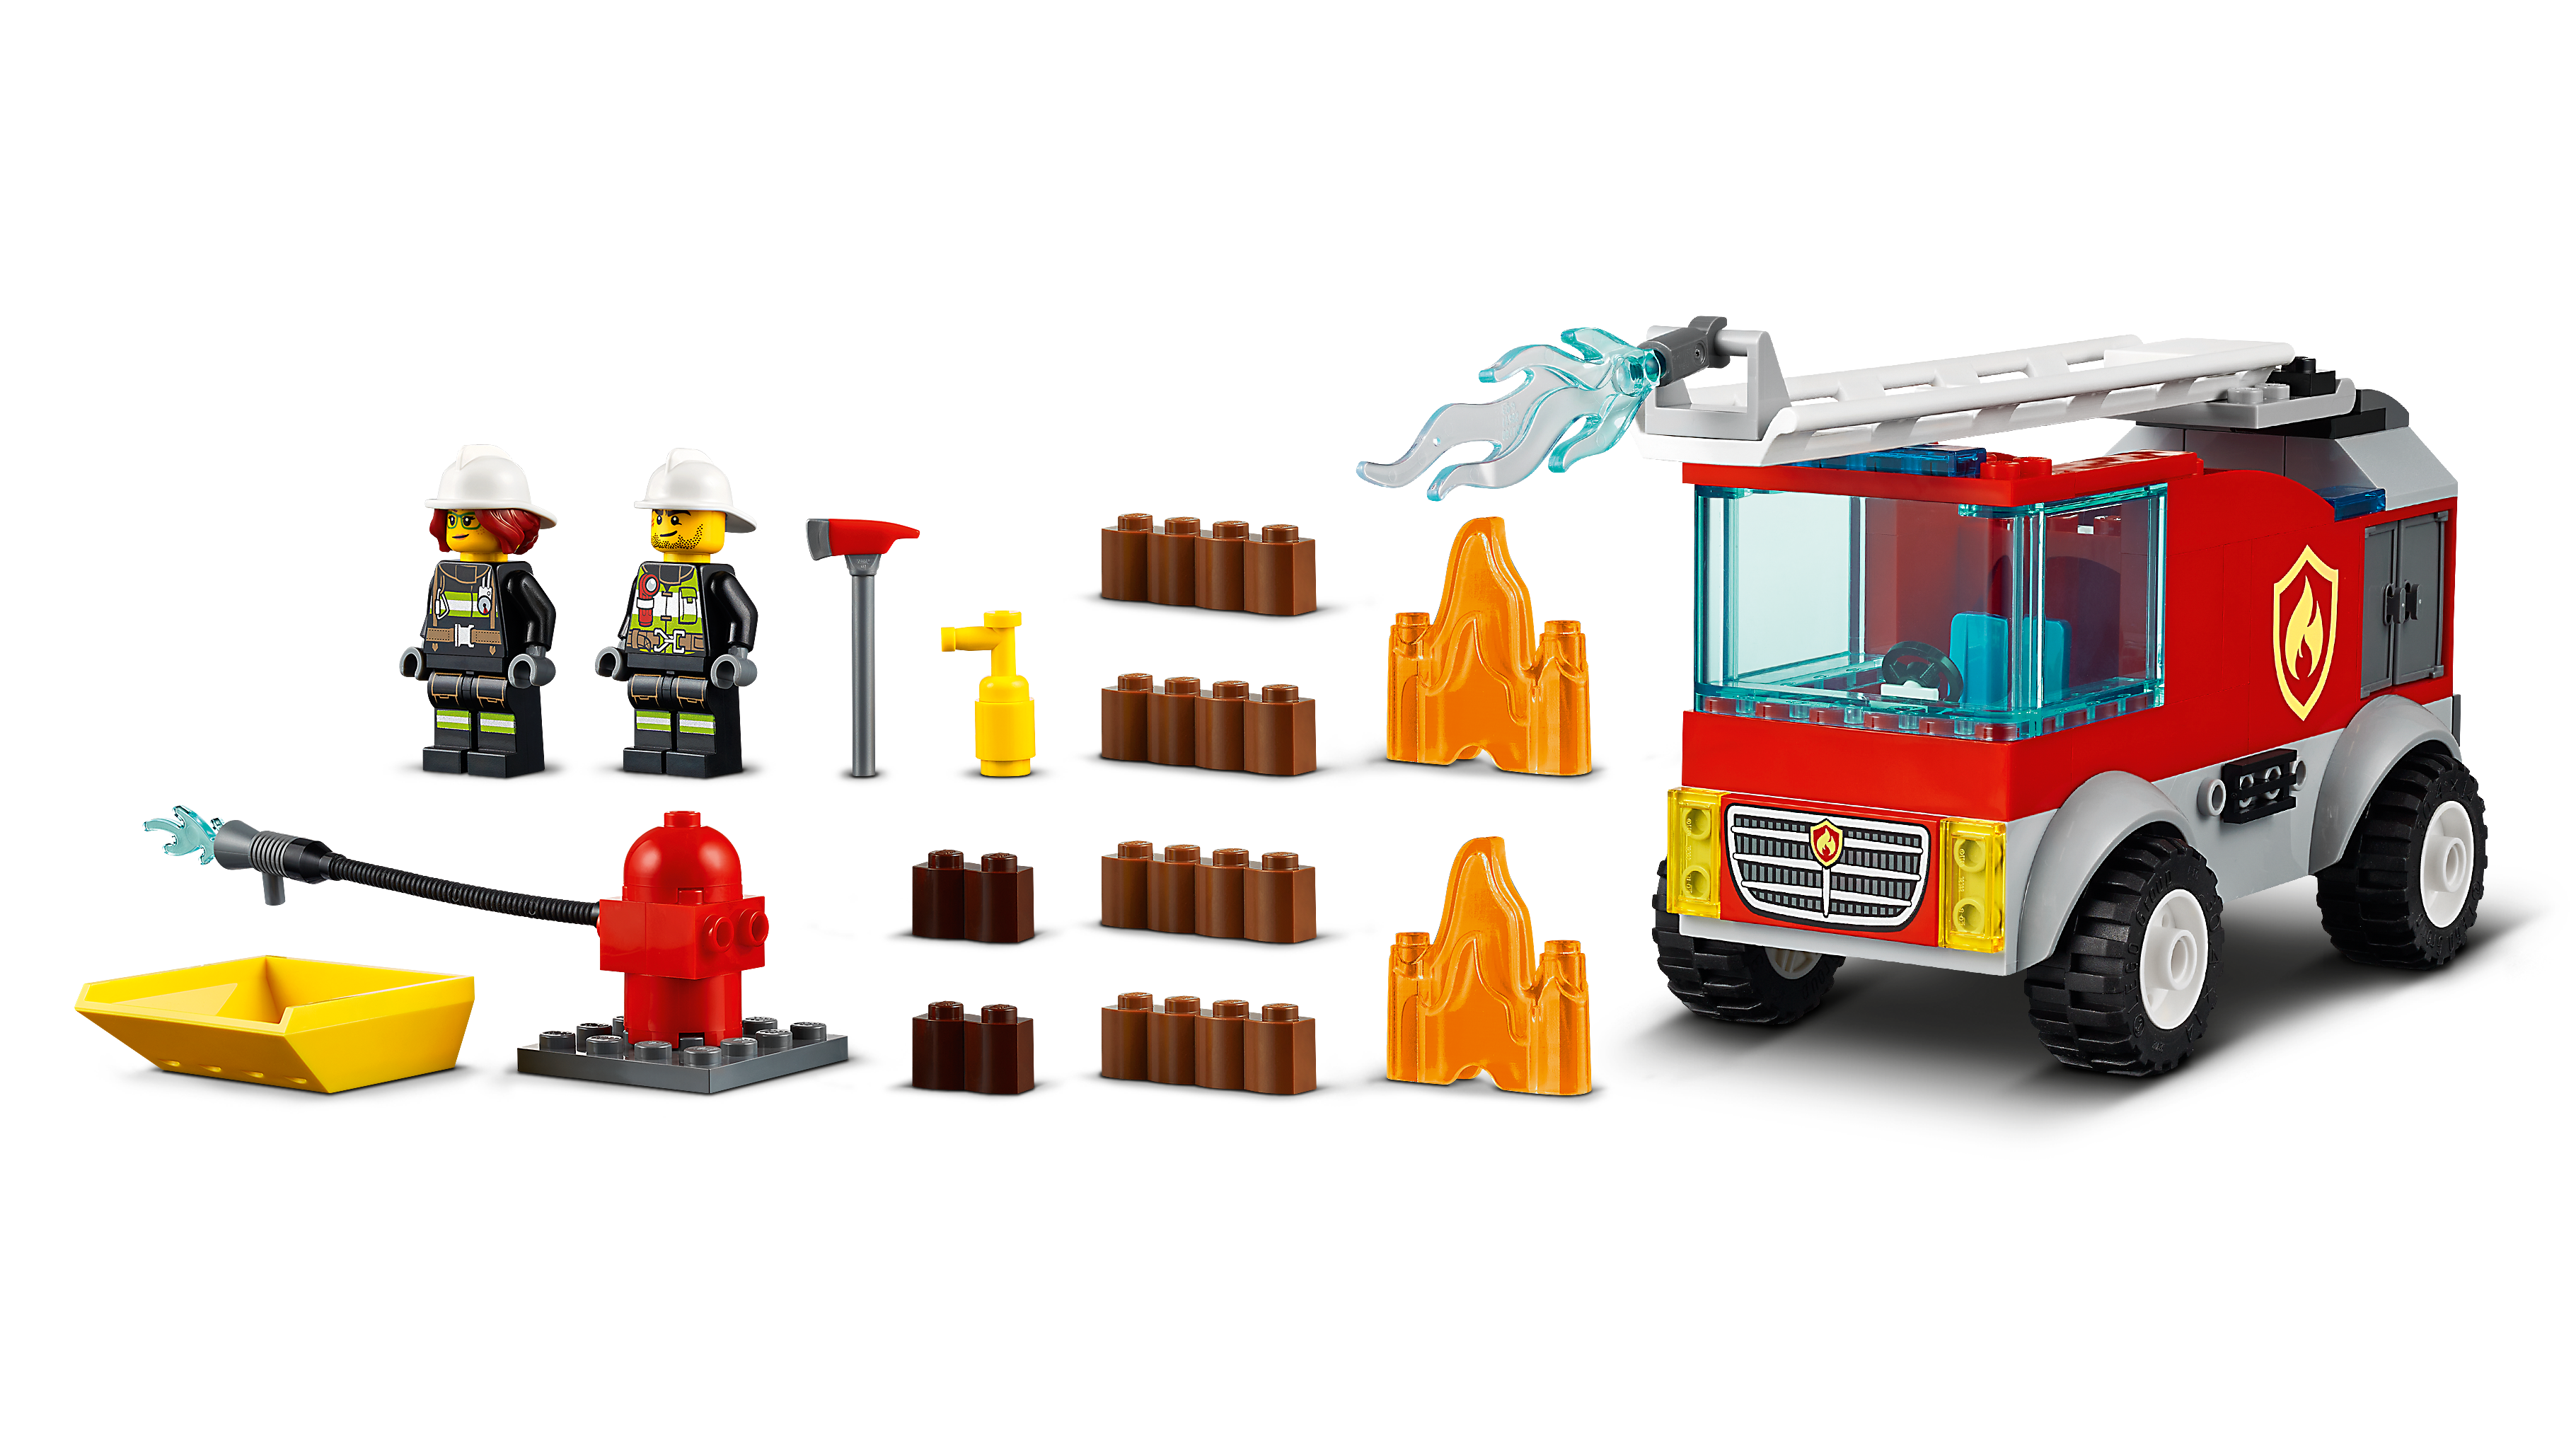 LEGO City Le camion de pompiers avec échelle 60280, Ensemble de